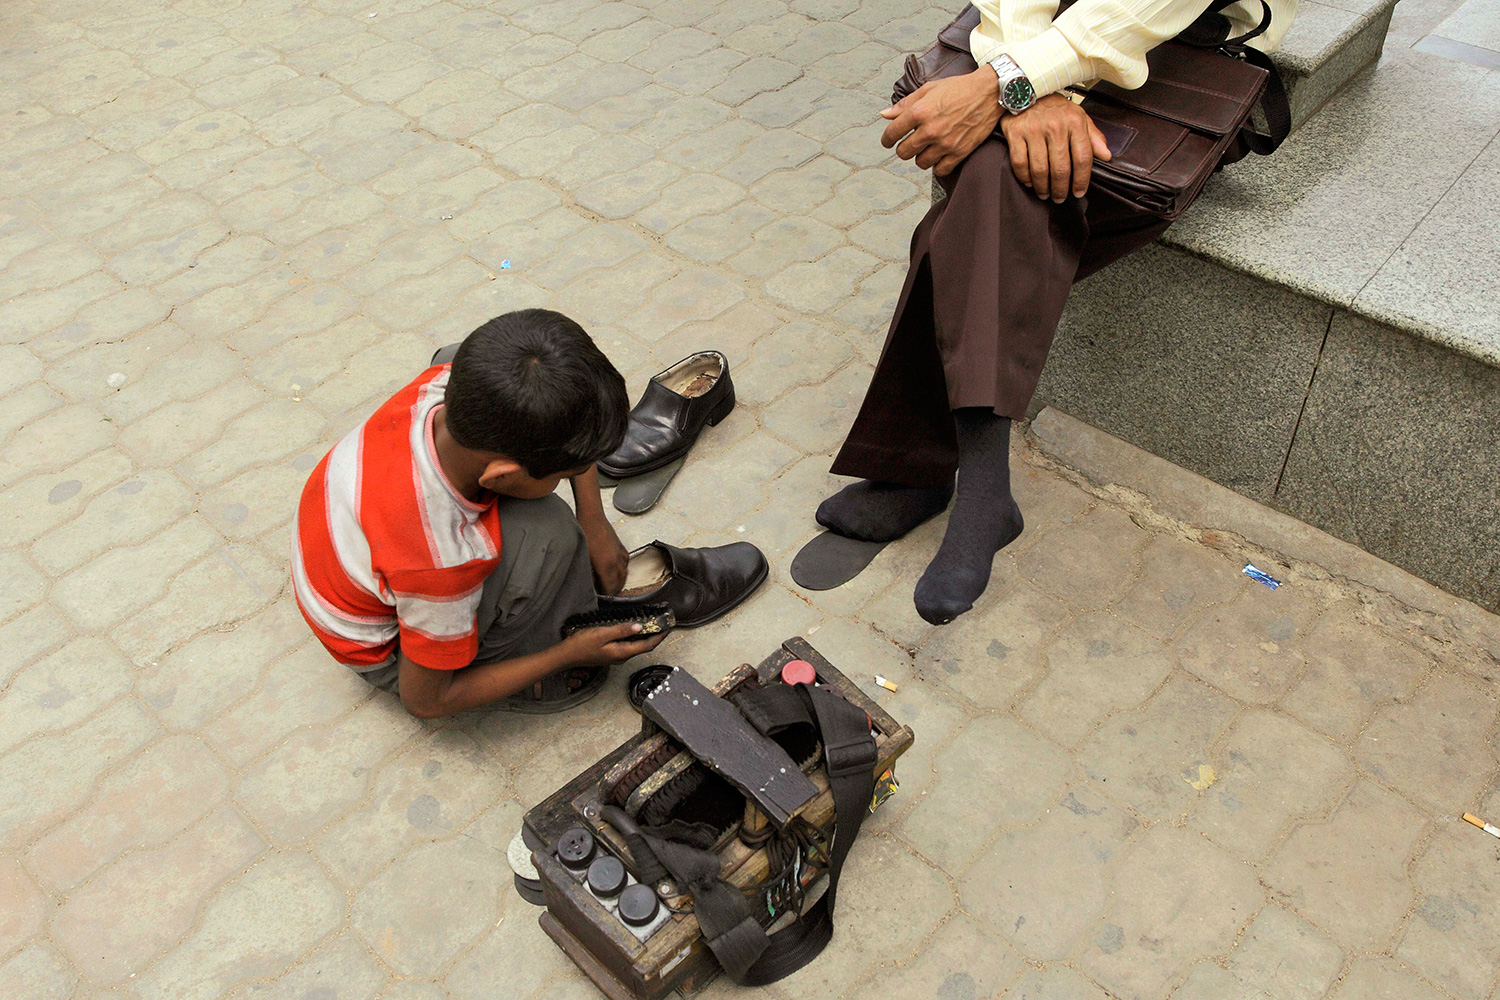 Un alcalde de Guatemala impulsa el trabajo infantil regalando a los niños cajas para limpiar zapatos